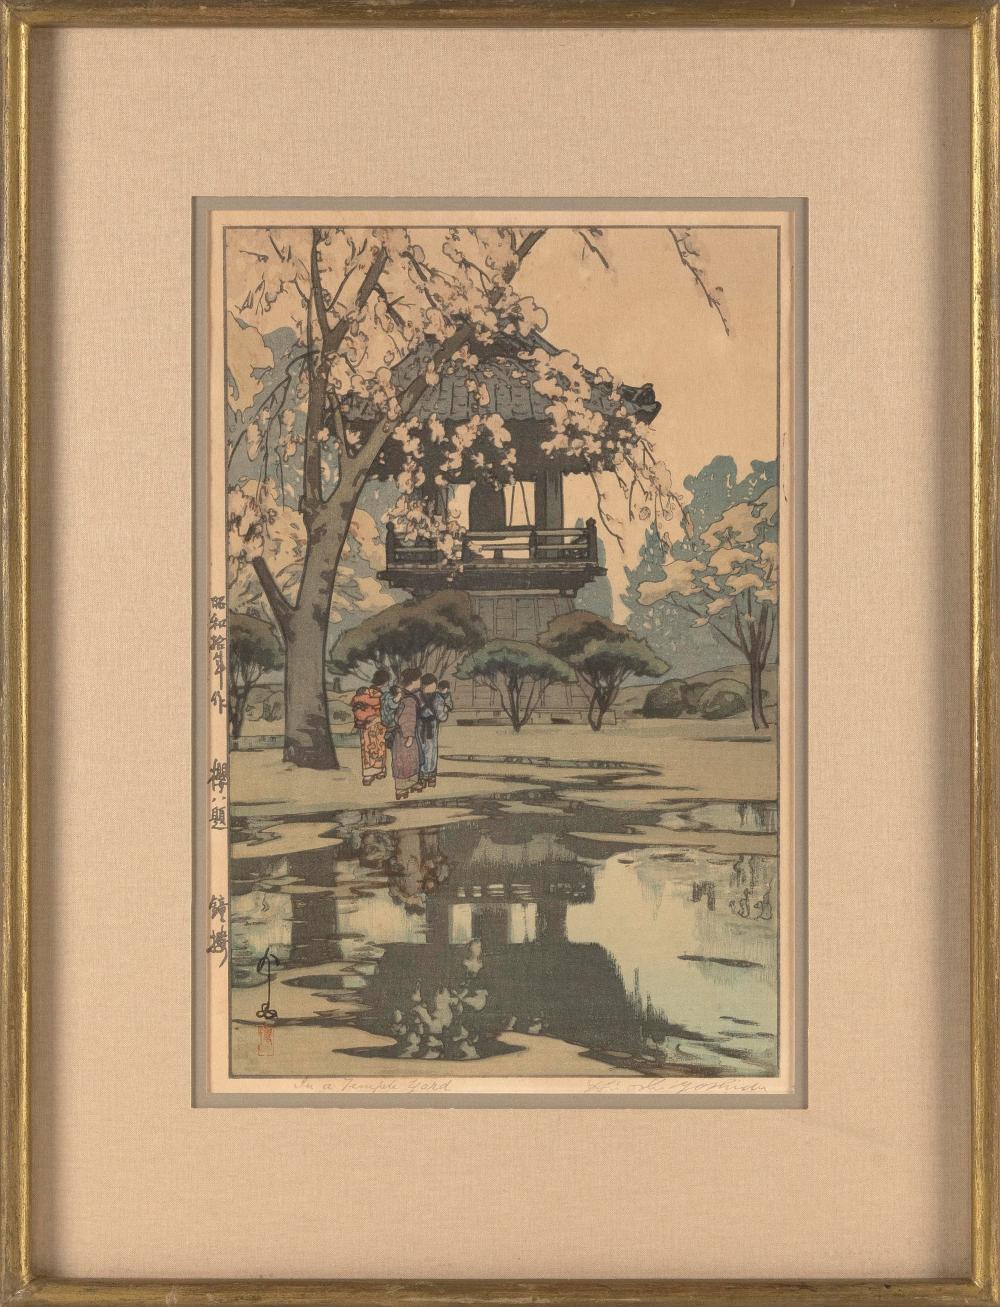 HIROSHI YOSHIDA JAPAN 1876 1950  3c7dfa